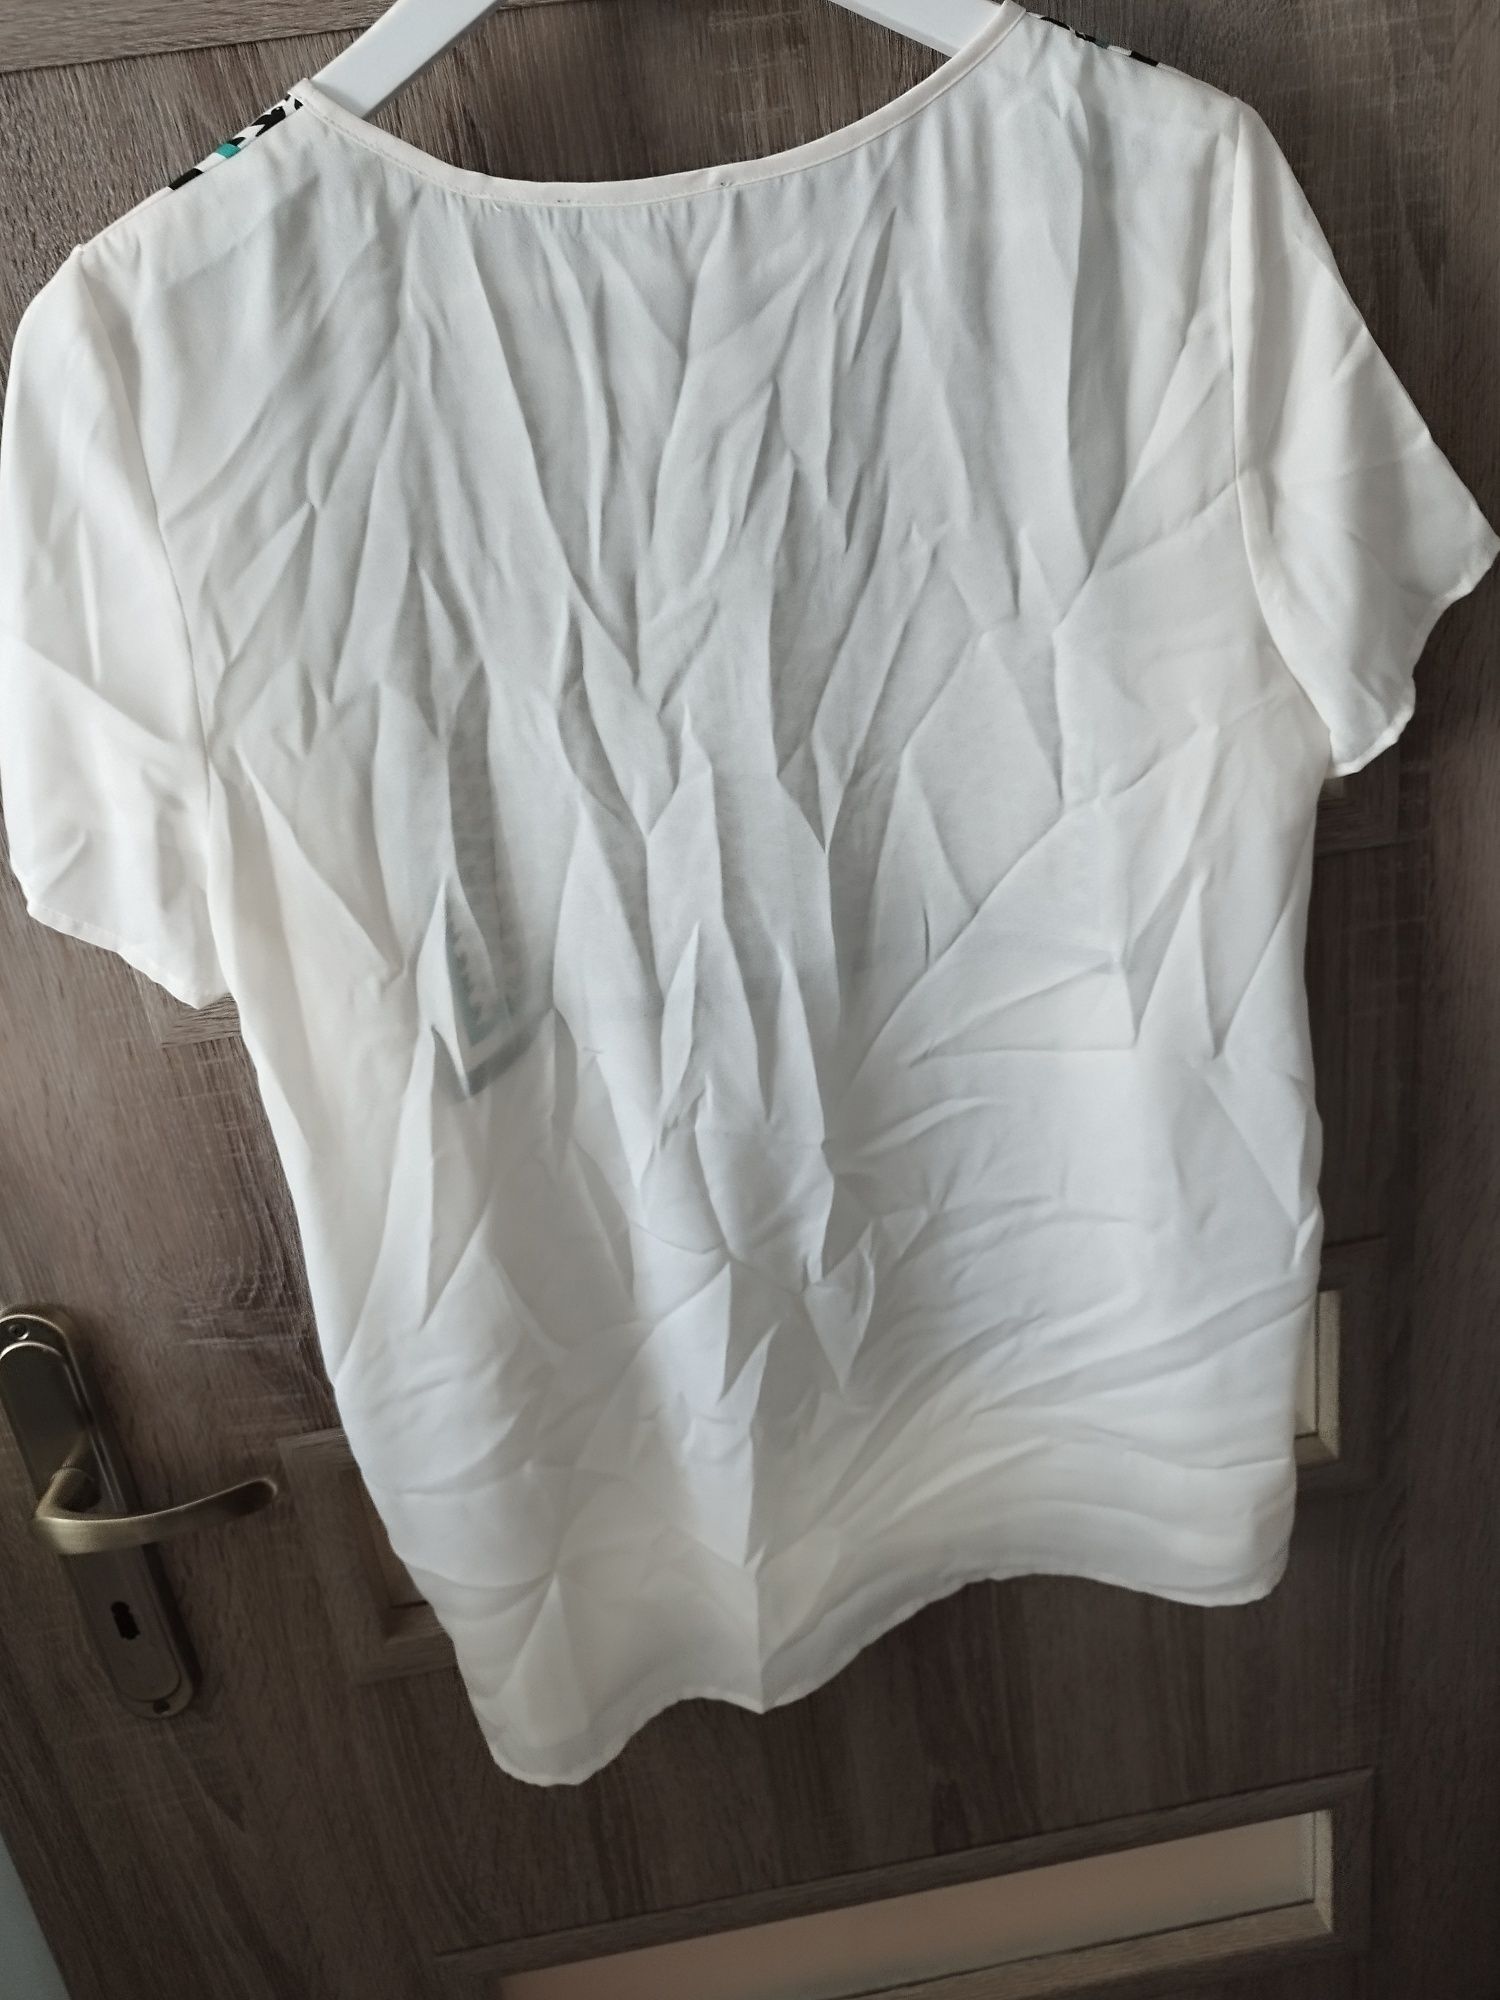 Bluzka koszulowa firmy Esprit rozmiar 40/L nowa z metką